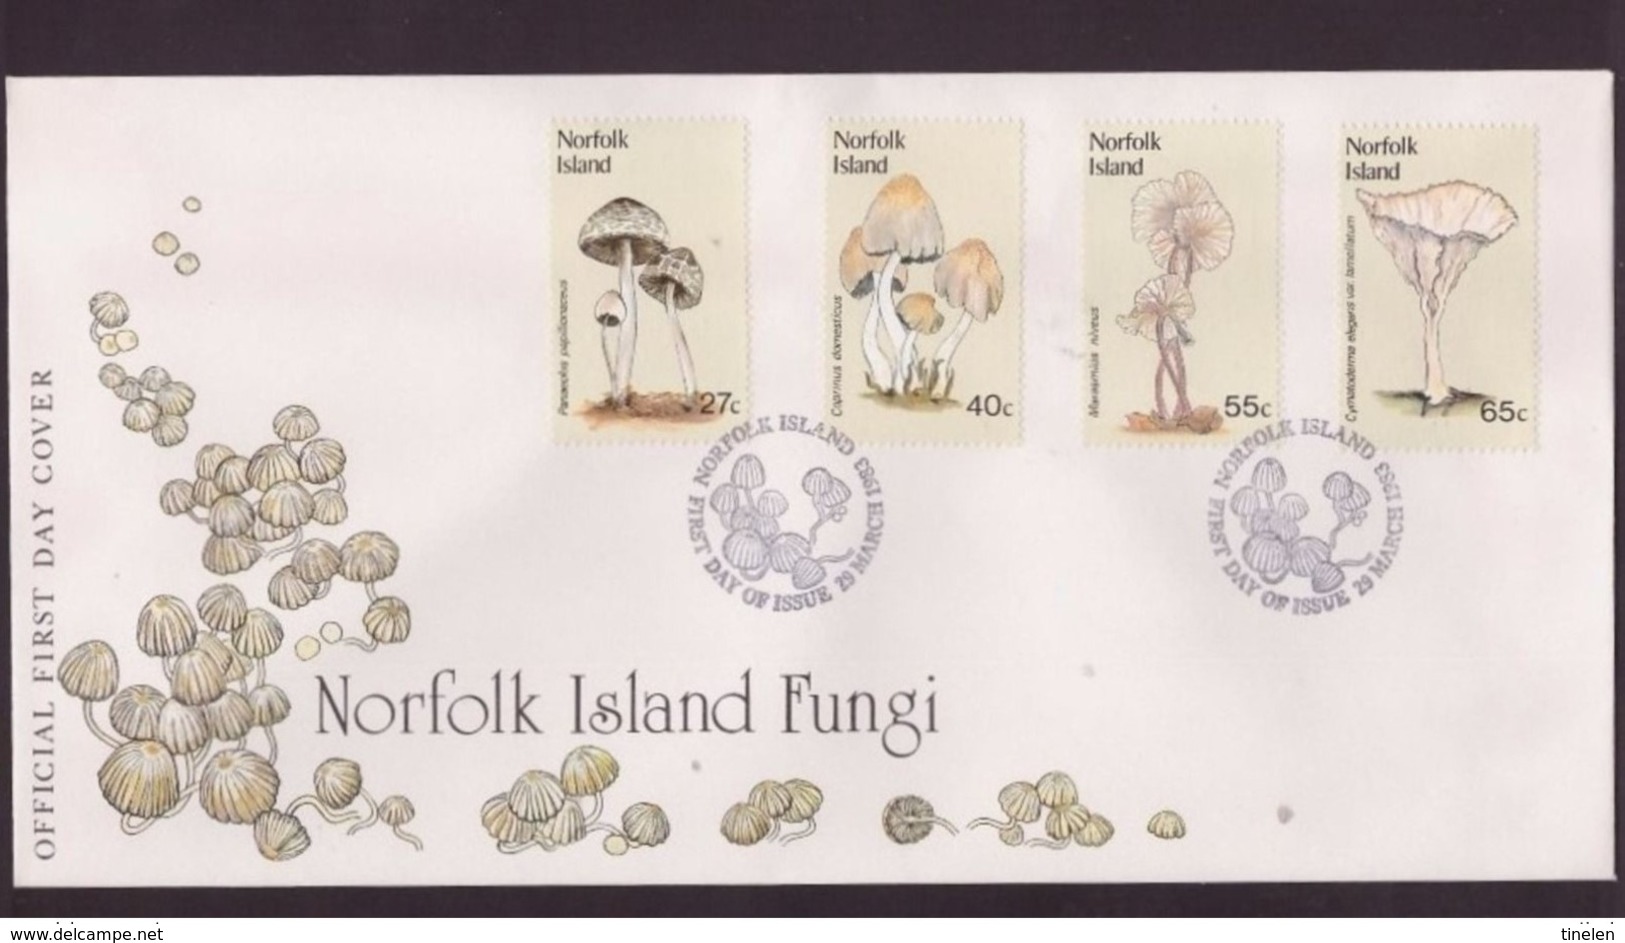 NORFOLK ISLAND - 29 3 1983 FDC FUNGHI - Funghi